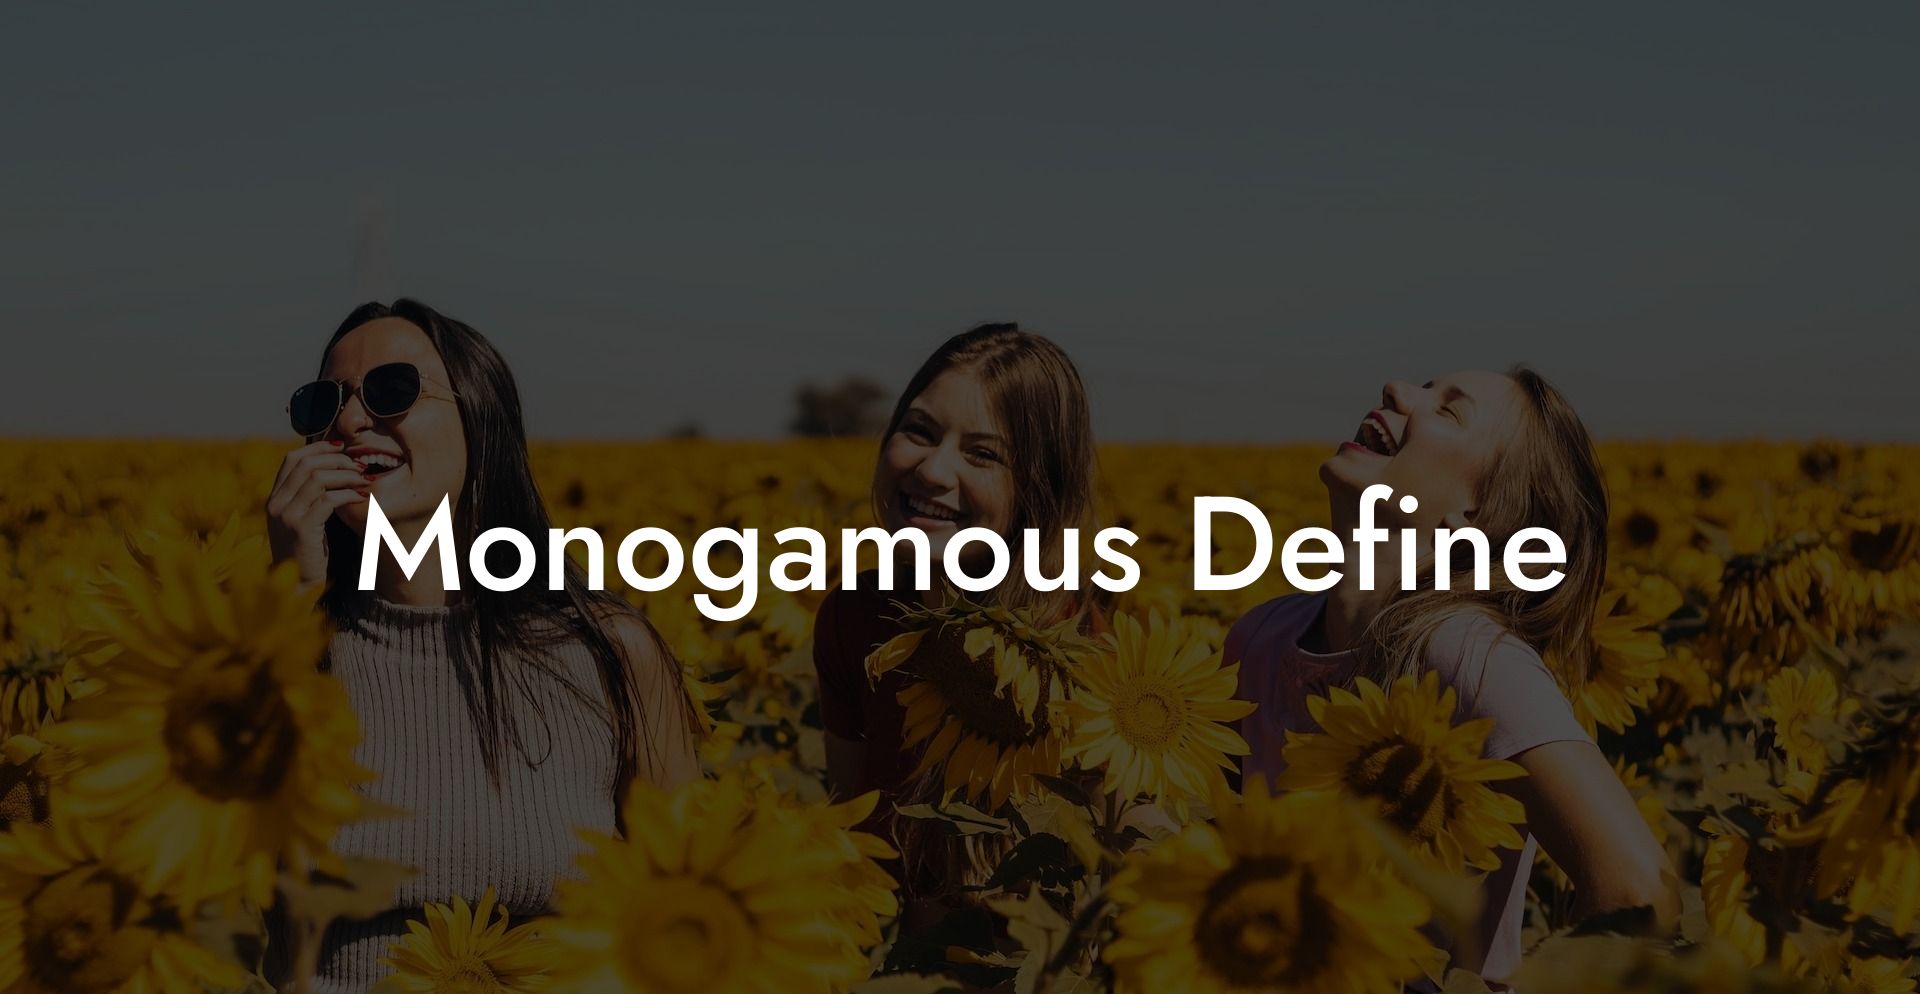 Monogamous Define